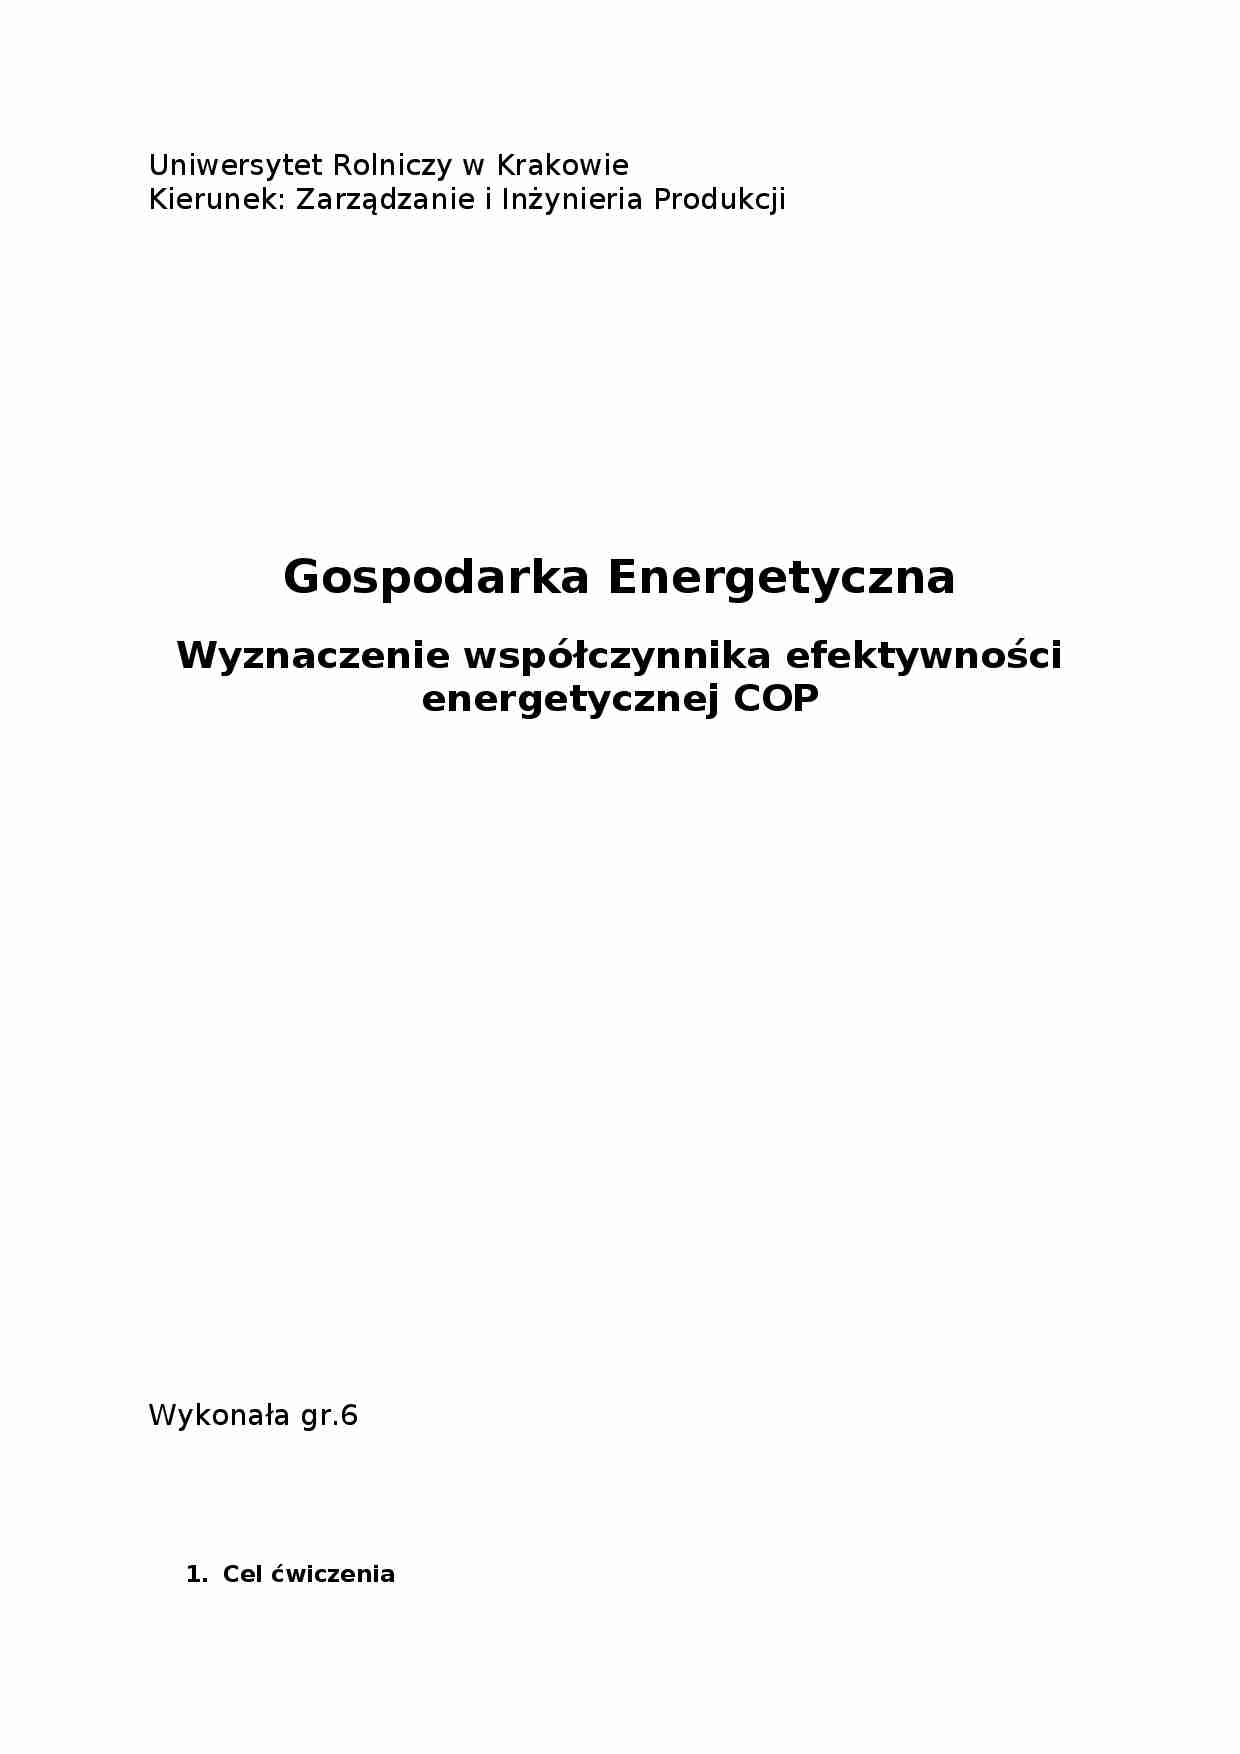 Wyznaczanie współczynnika efektywności energetycznej COP - strona 1